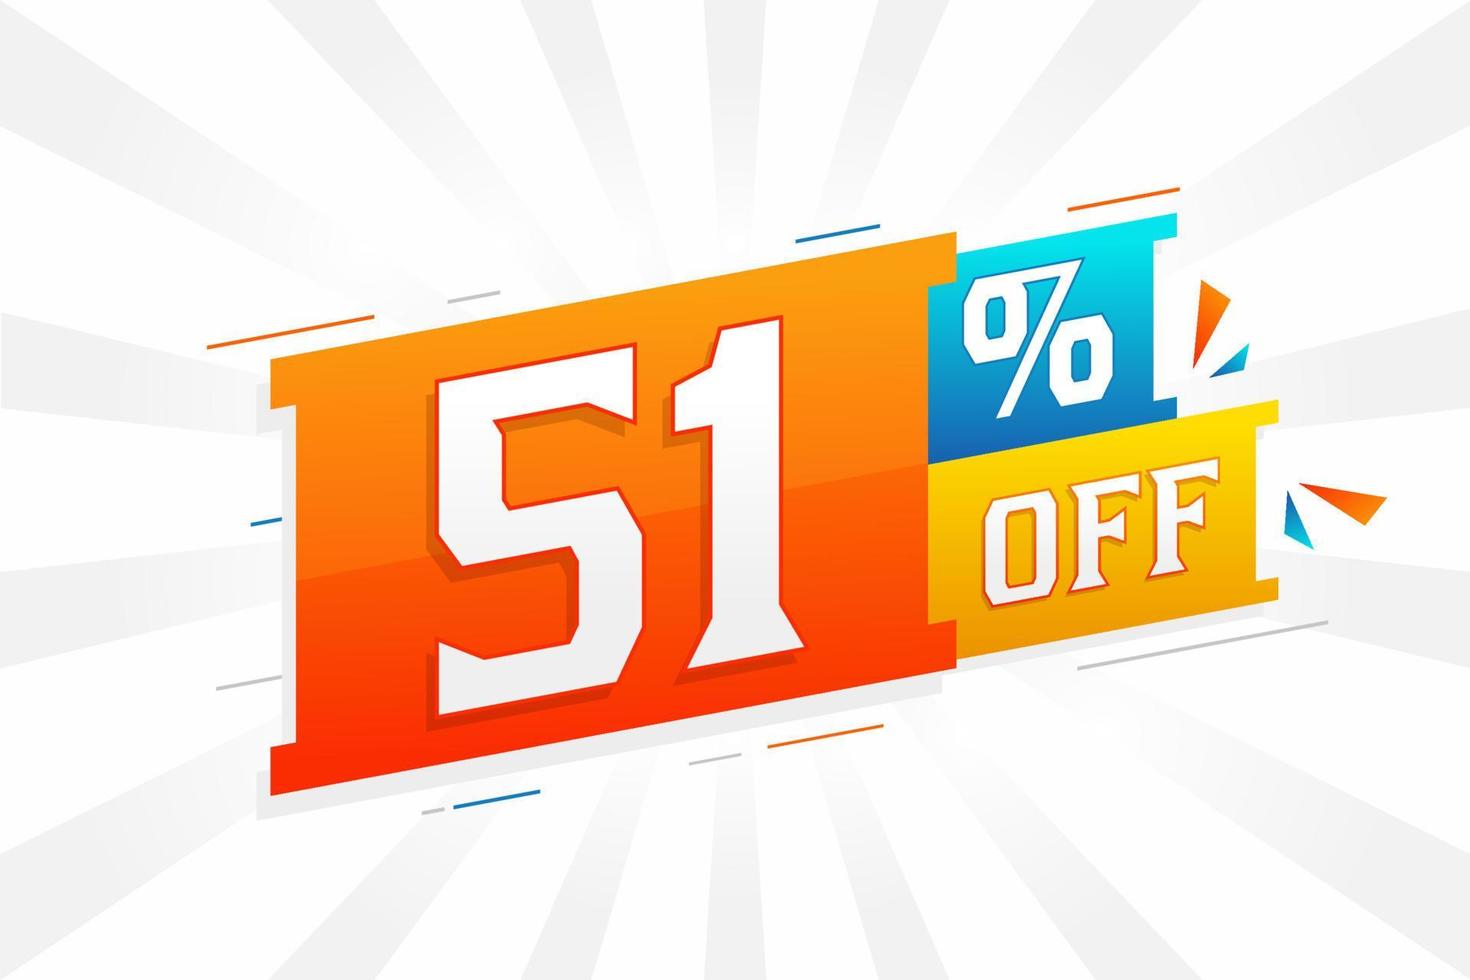 51 por ciento de descuento en el diseño de campañas promocionales especiales en 3D. 51 de oferta de descuento 3d para venta y marketing. vector